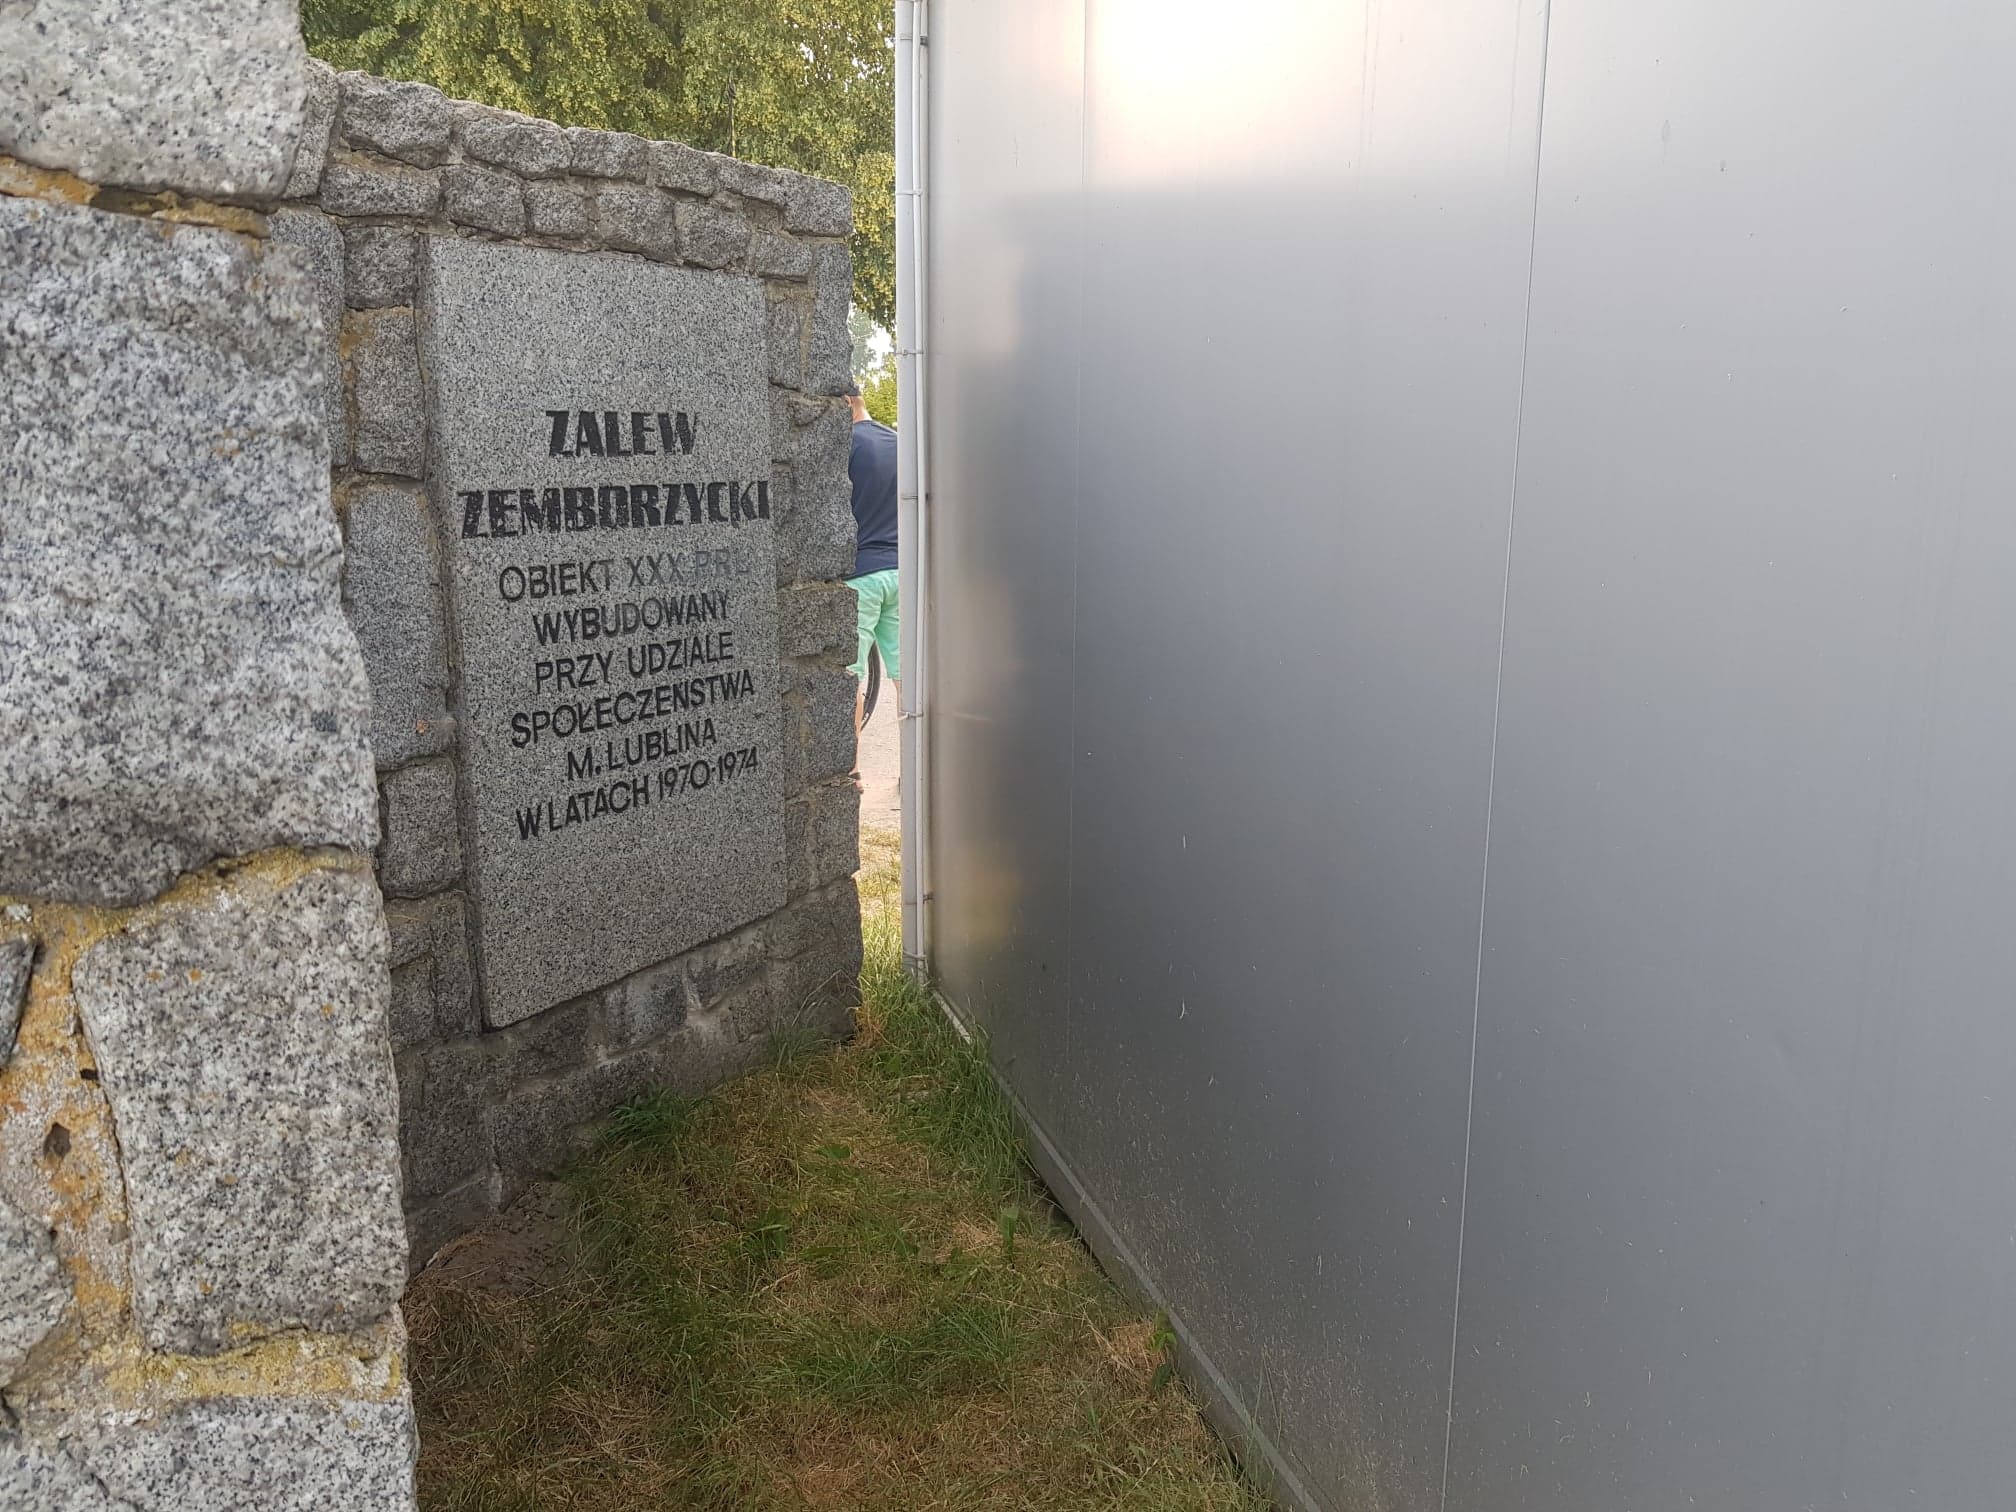 Punkt gastronomiczny zasłania tablicę pamiątkową nad Zalewem Zemborzyckim. Po zakończeniu sezonu budka zostanie przestawiona (zdjęcia)